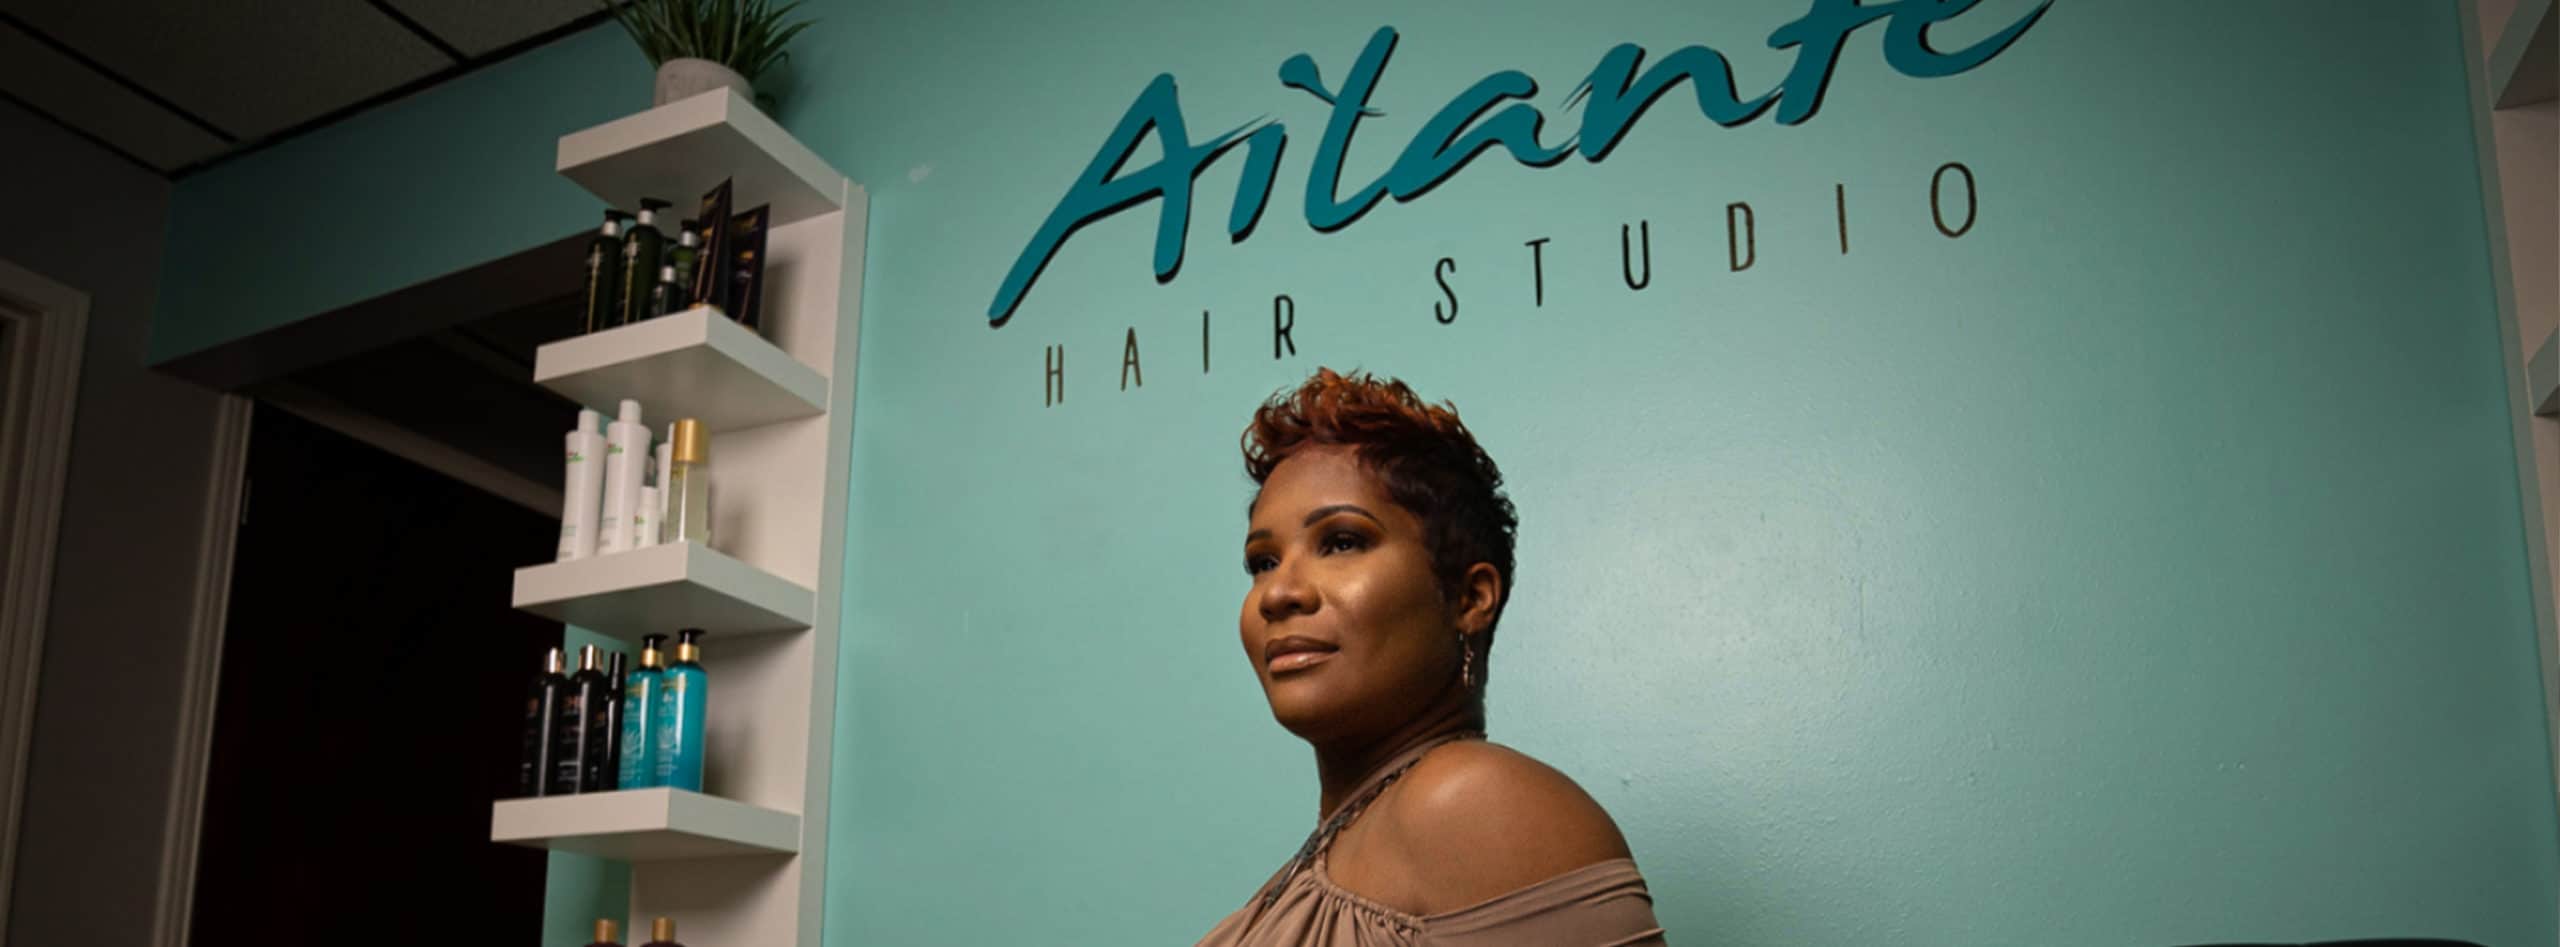 Ailante Hair Studio | San Antonio Commercial Photography